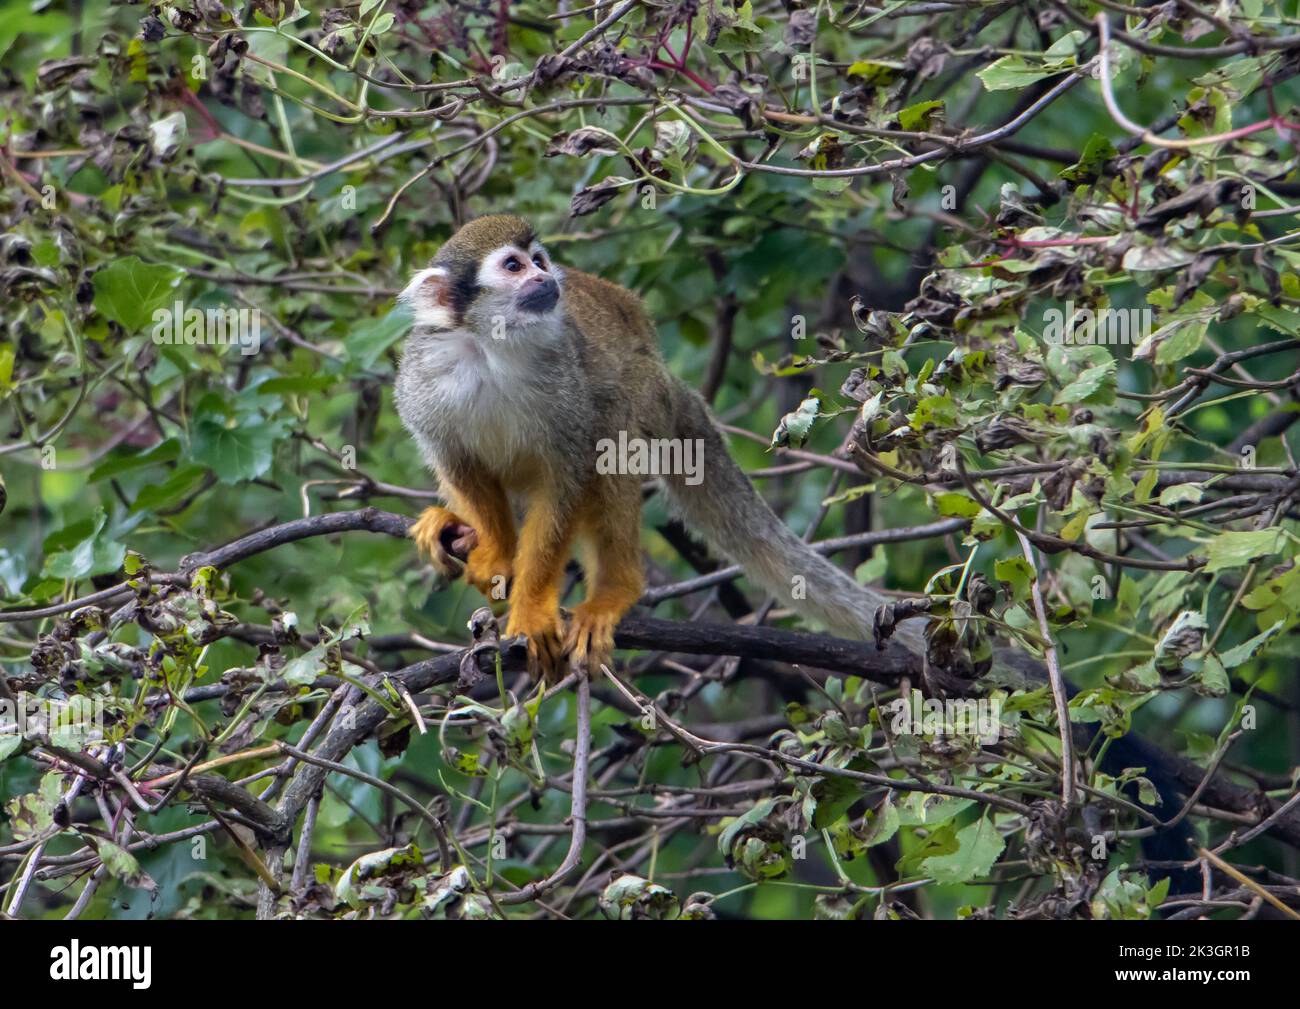 A Common squirrel monkeys (Saimiri sciureus) on a tree Stock Photo